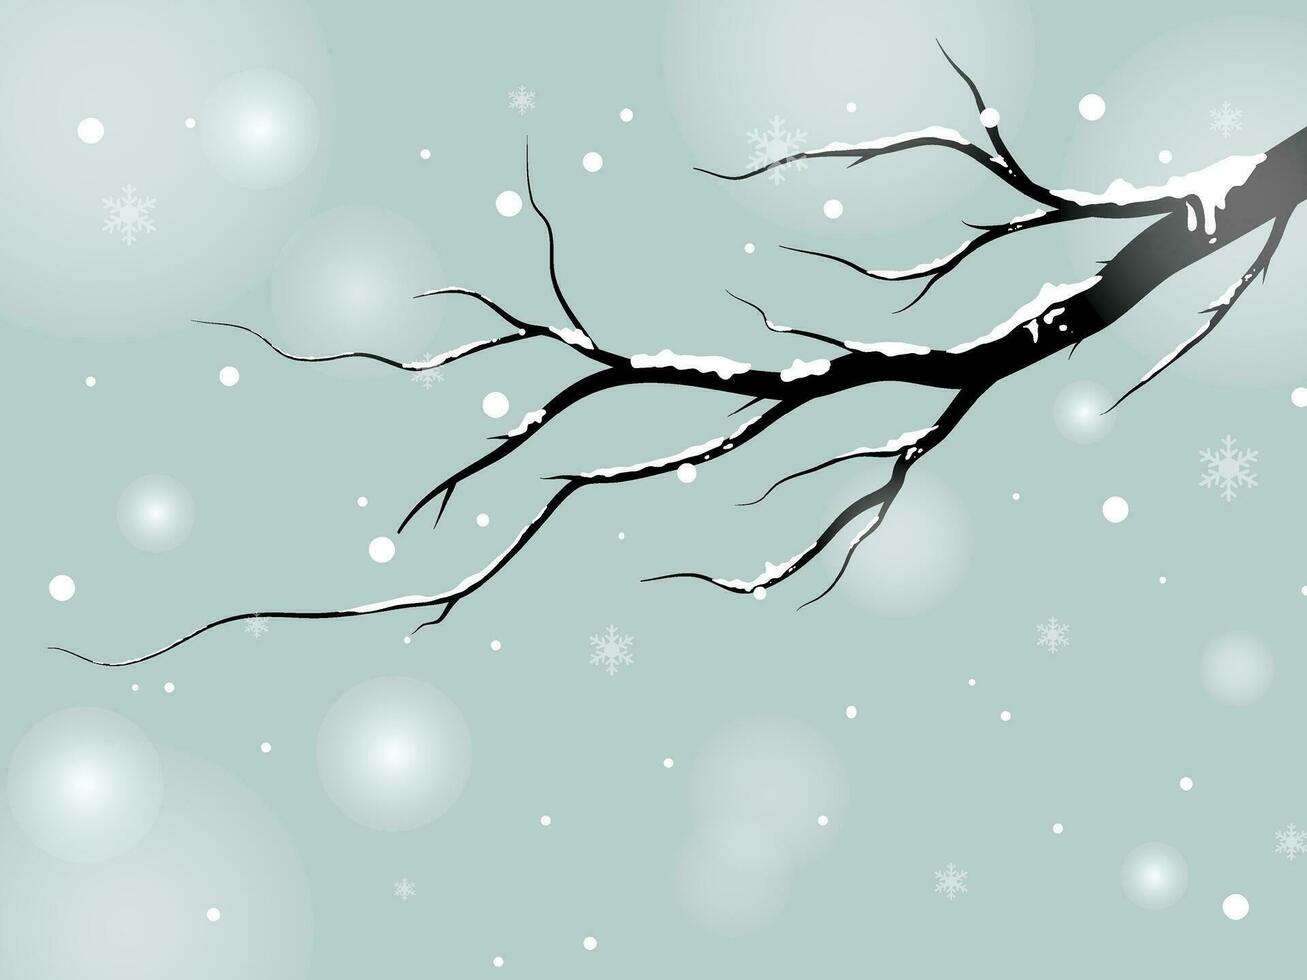 negro rama árbol bosque antecedentes y nevando para invierno temporada concepto y Bienvenido a Navidad estación. mano dibujado aislado ilustraciones. vector